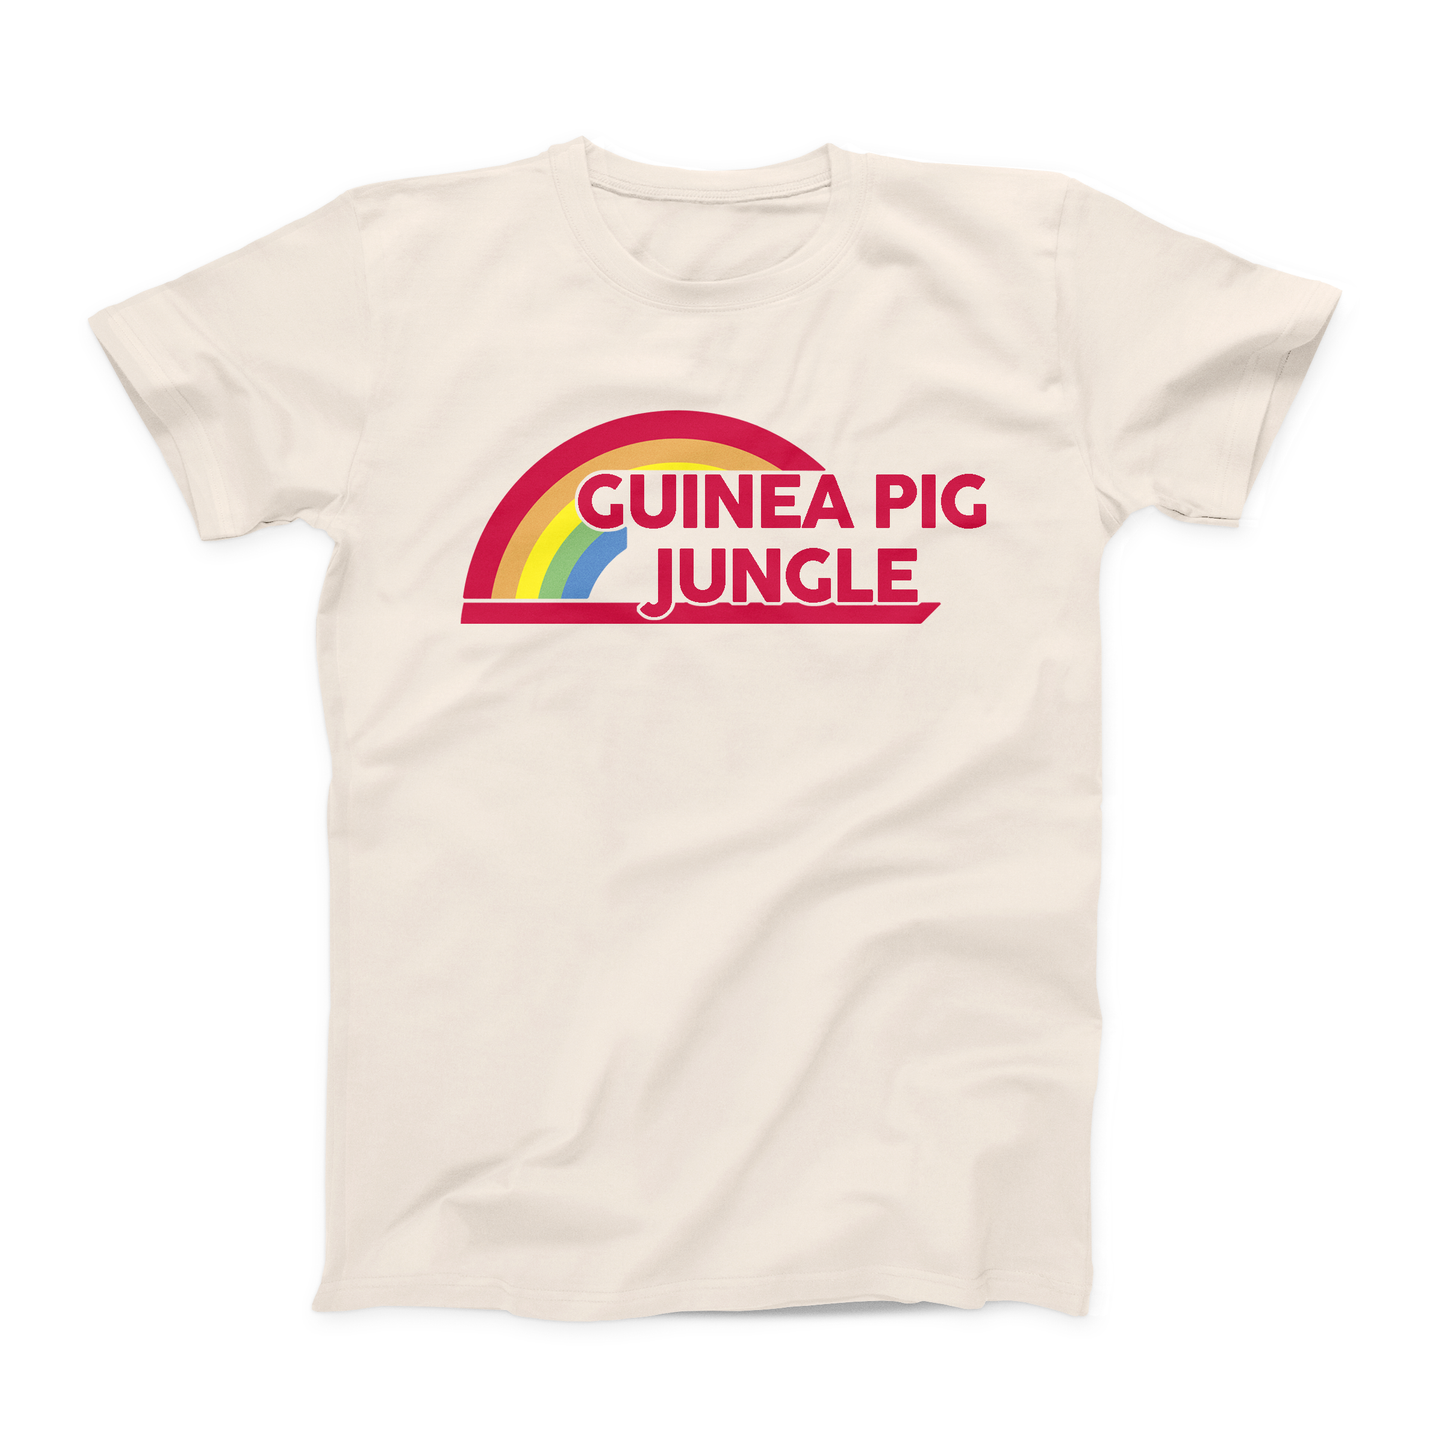 Guinea Pig Rainbow Youth T-Shirt : Guinea Pig Jungle Shirt: